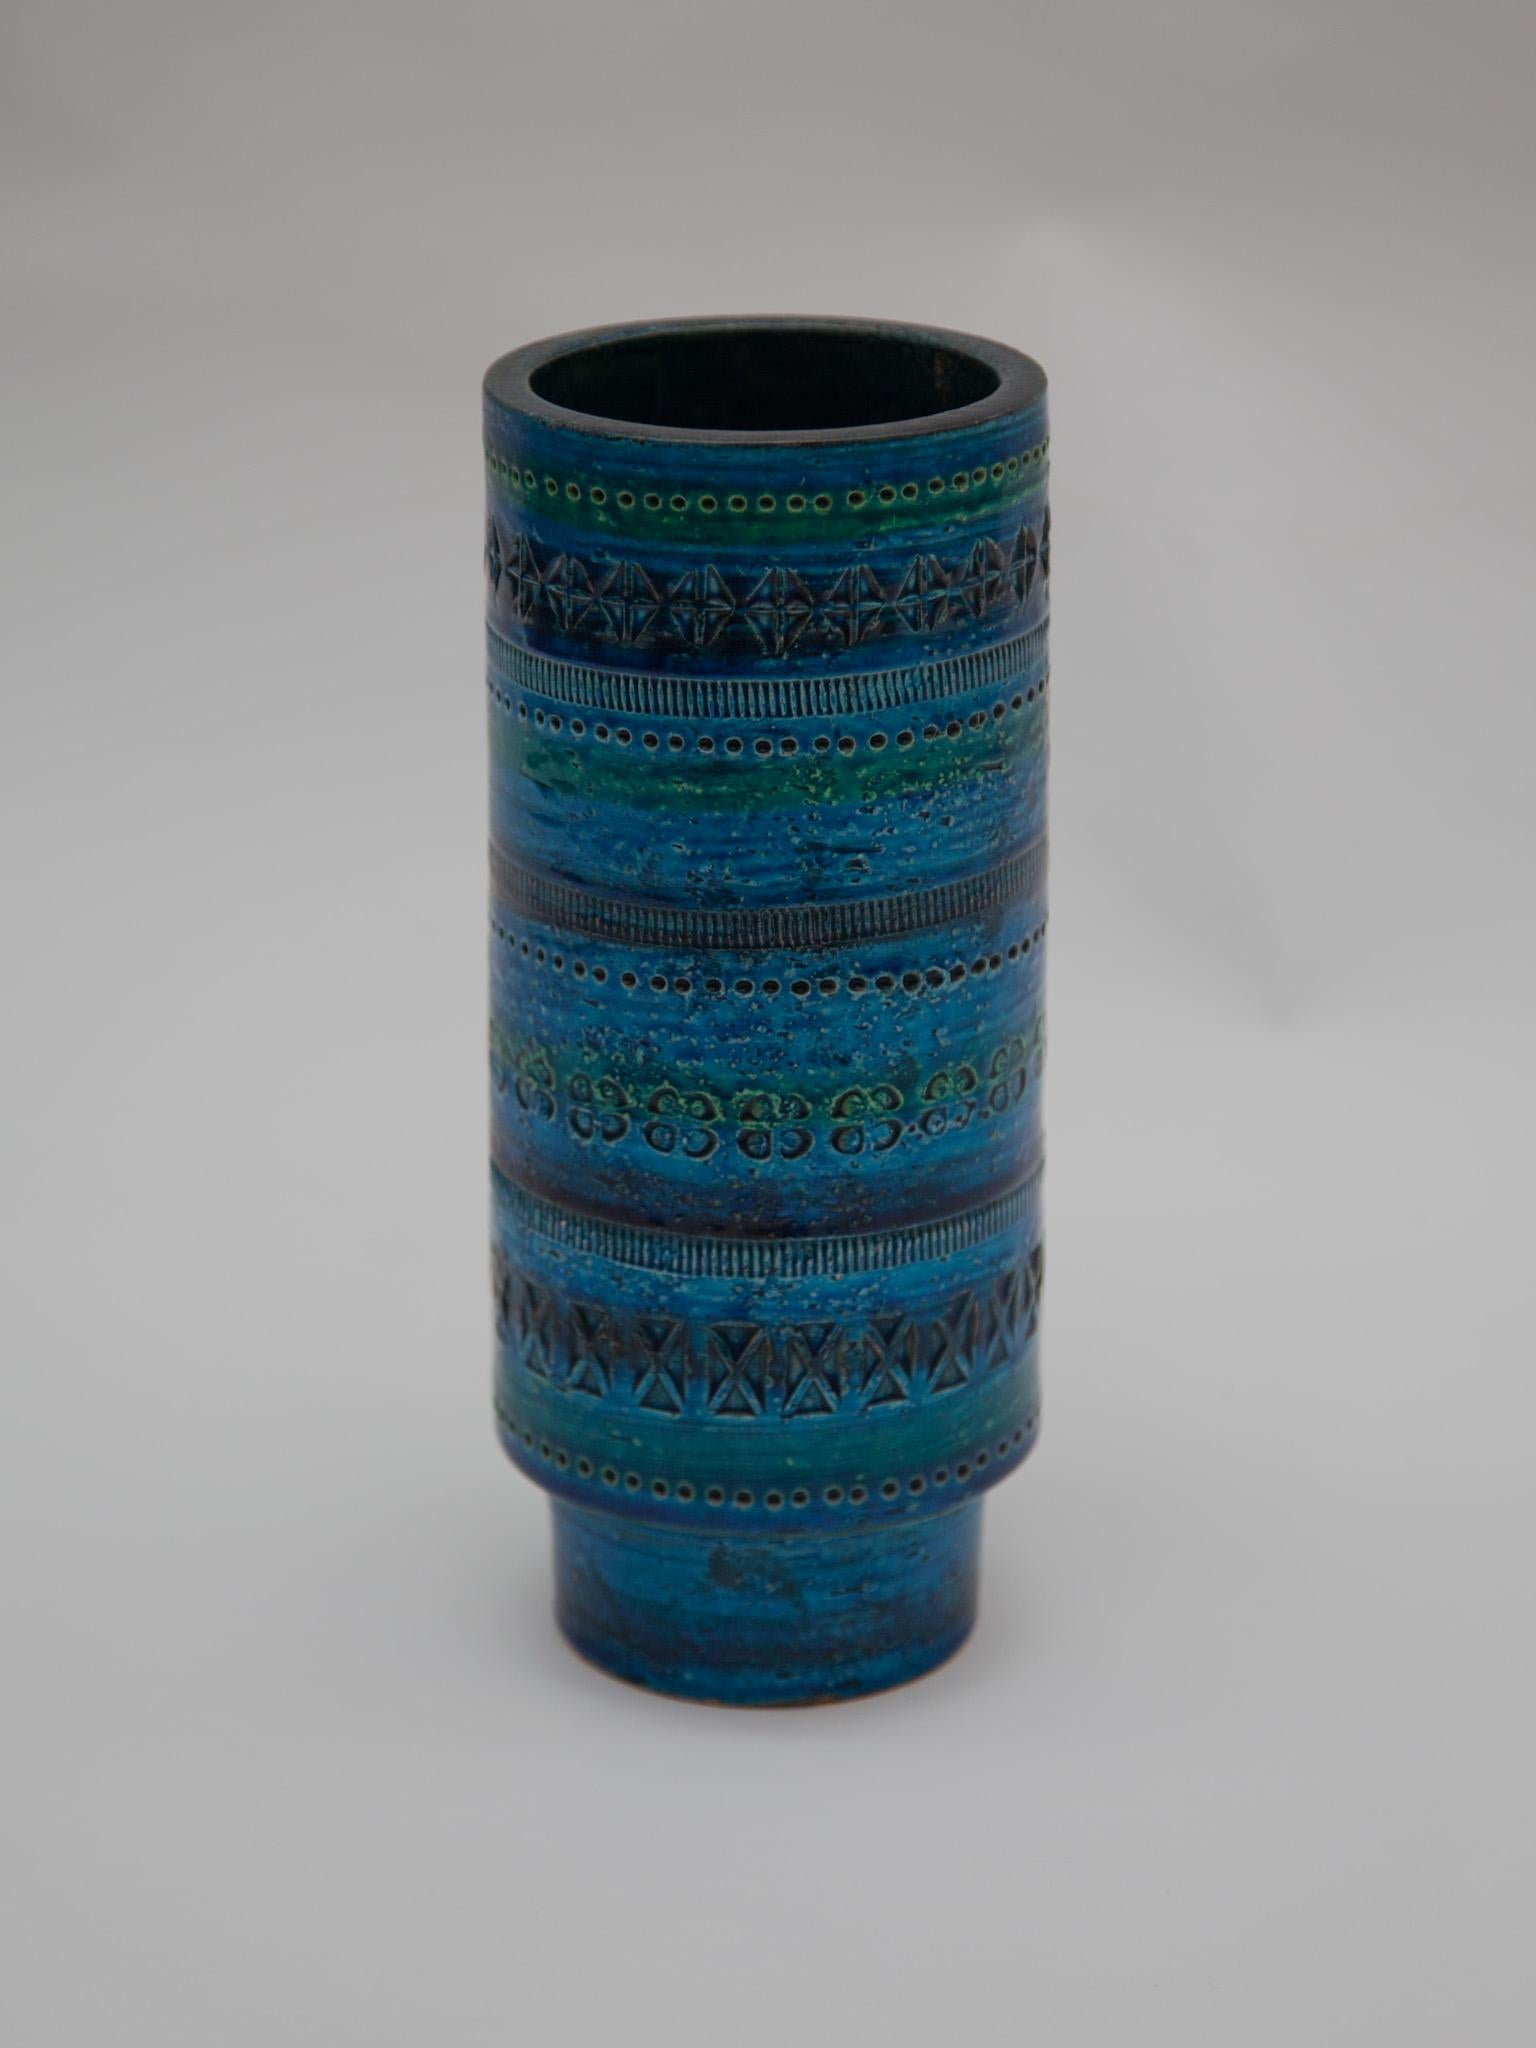 Moderne runde Vase aus blau glasierter Keramik, Italien, 1950-1960er Jahre. Entworfen von Aldo Londi und hergestellt von Bitossi. Handgefertigt in Italien mit handgeschnitztem geometrischem Muster in einem glasierten, lebhaften Türkis und